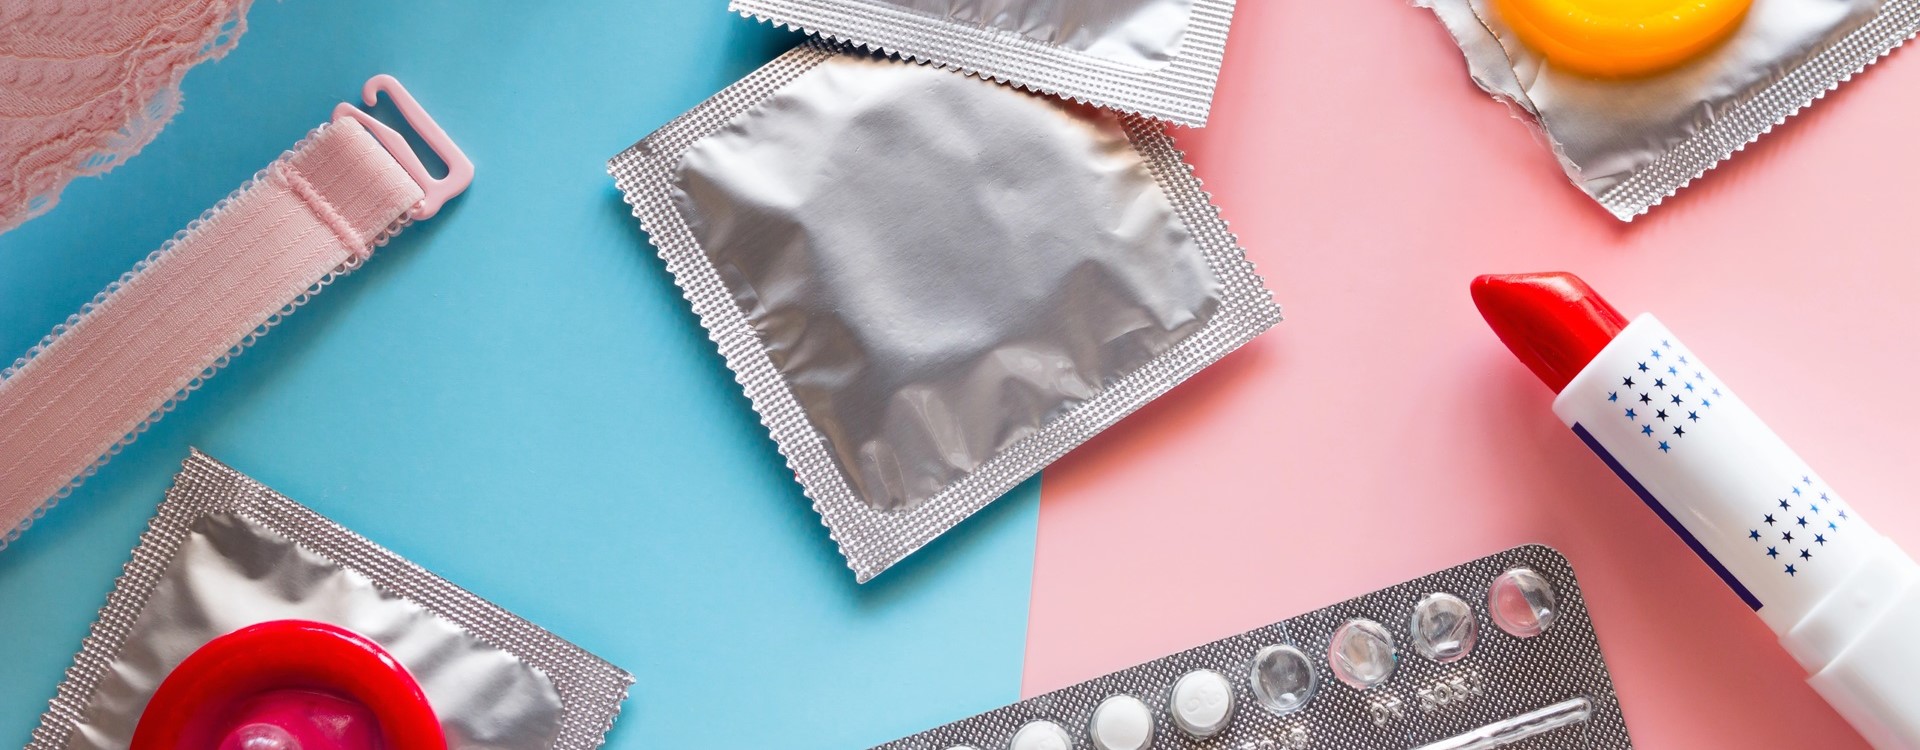 Pille, Kondome, Lippenstift und BH liegen durcheinander